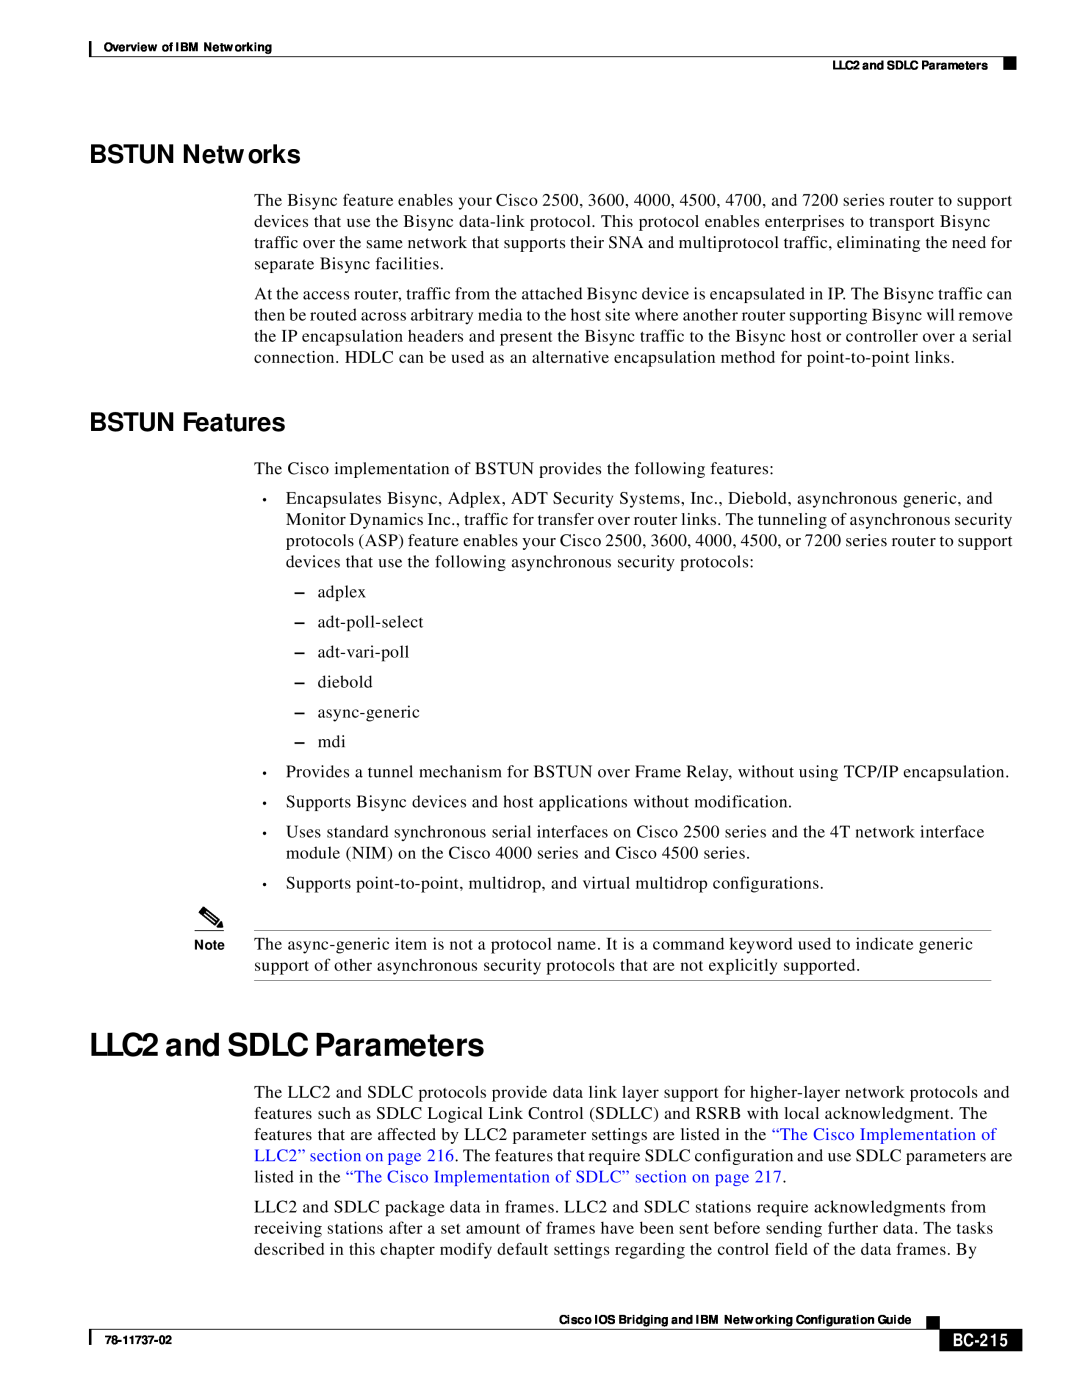 IBM BC-201 manual LLC2 and SDLC Parameters, BSTUN Networks, BSTUN Features, BC-215 